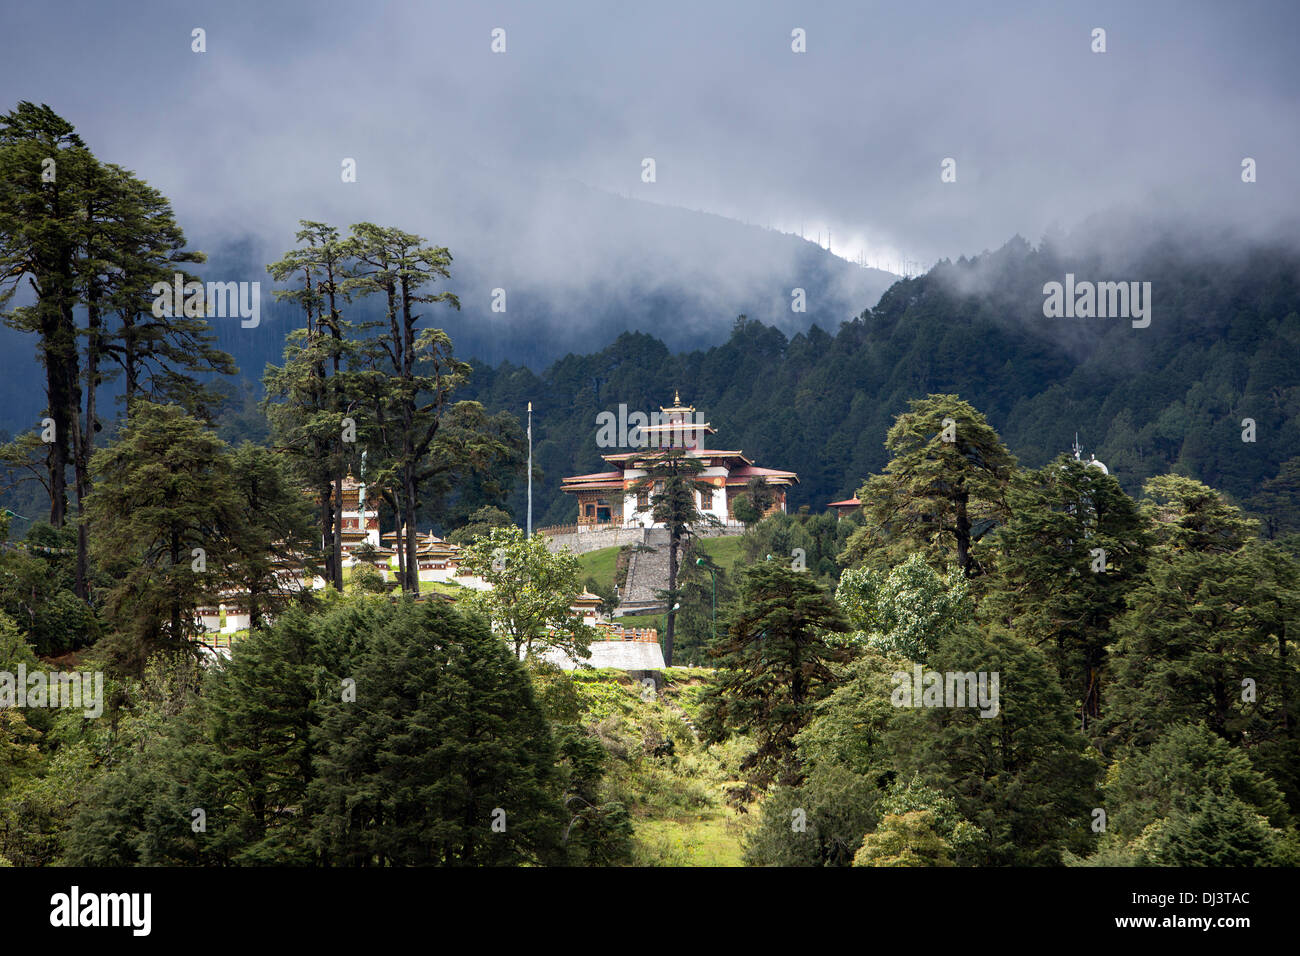 Bhutan, Dochu La pass, Druk Wangyal Lhakhang temple Stock Photo